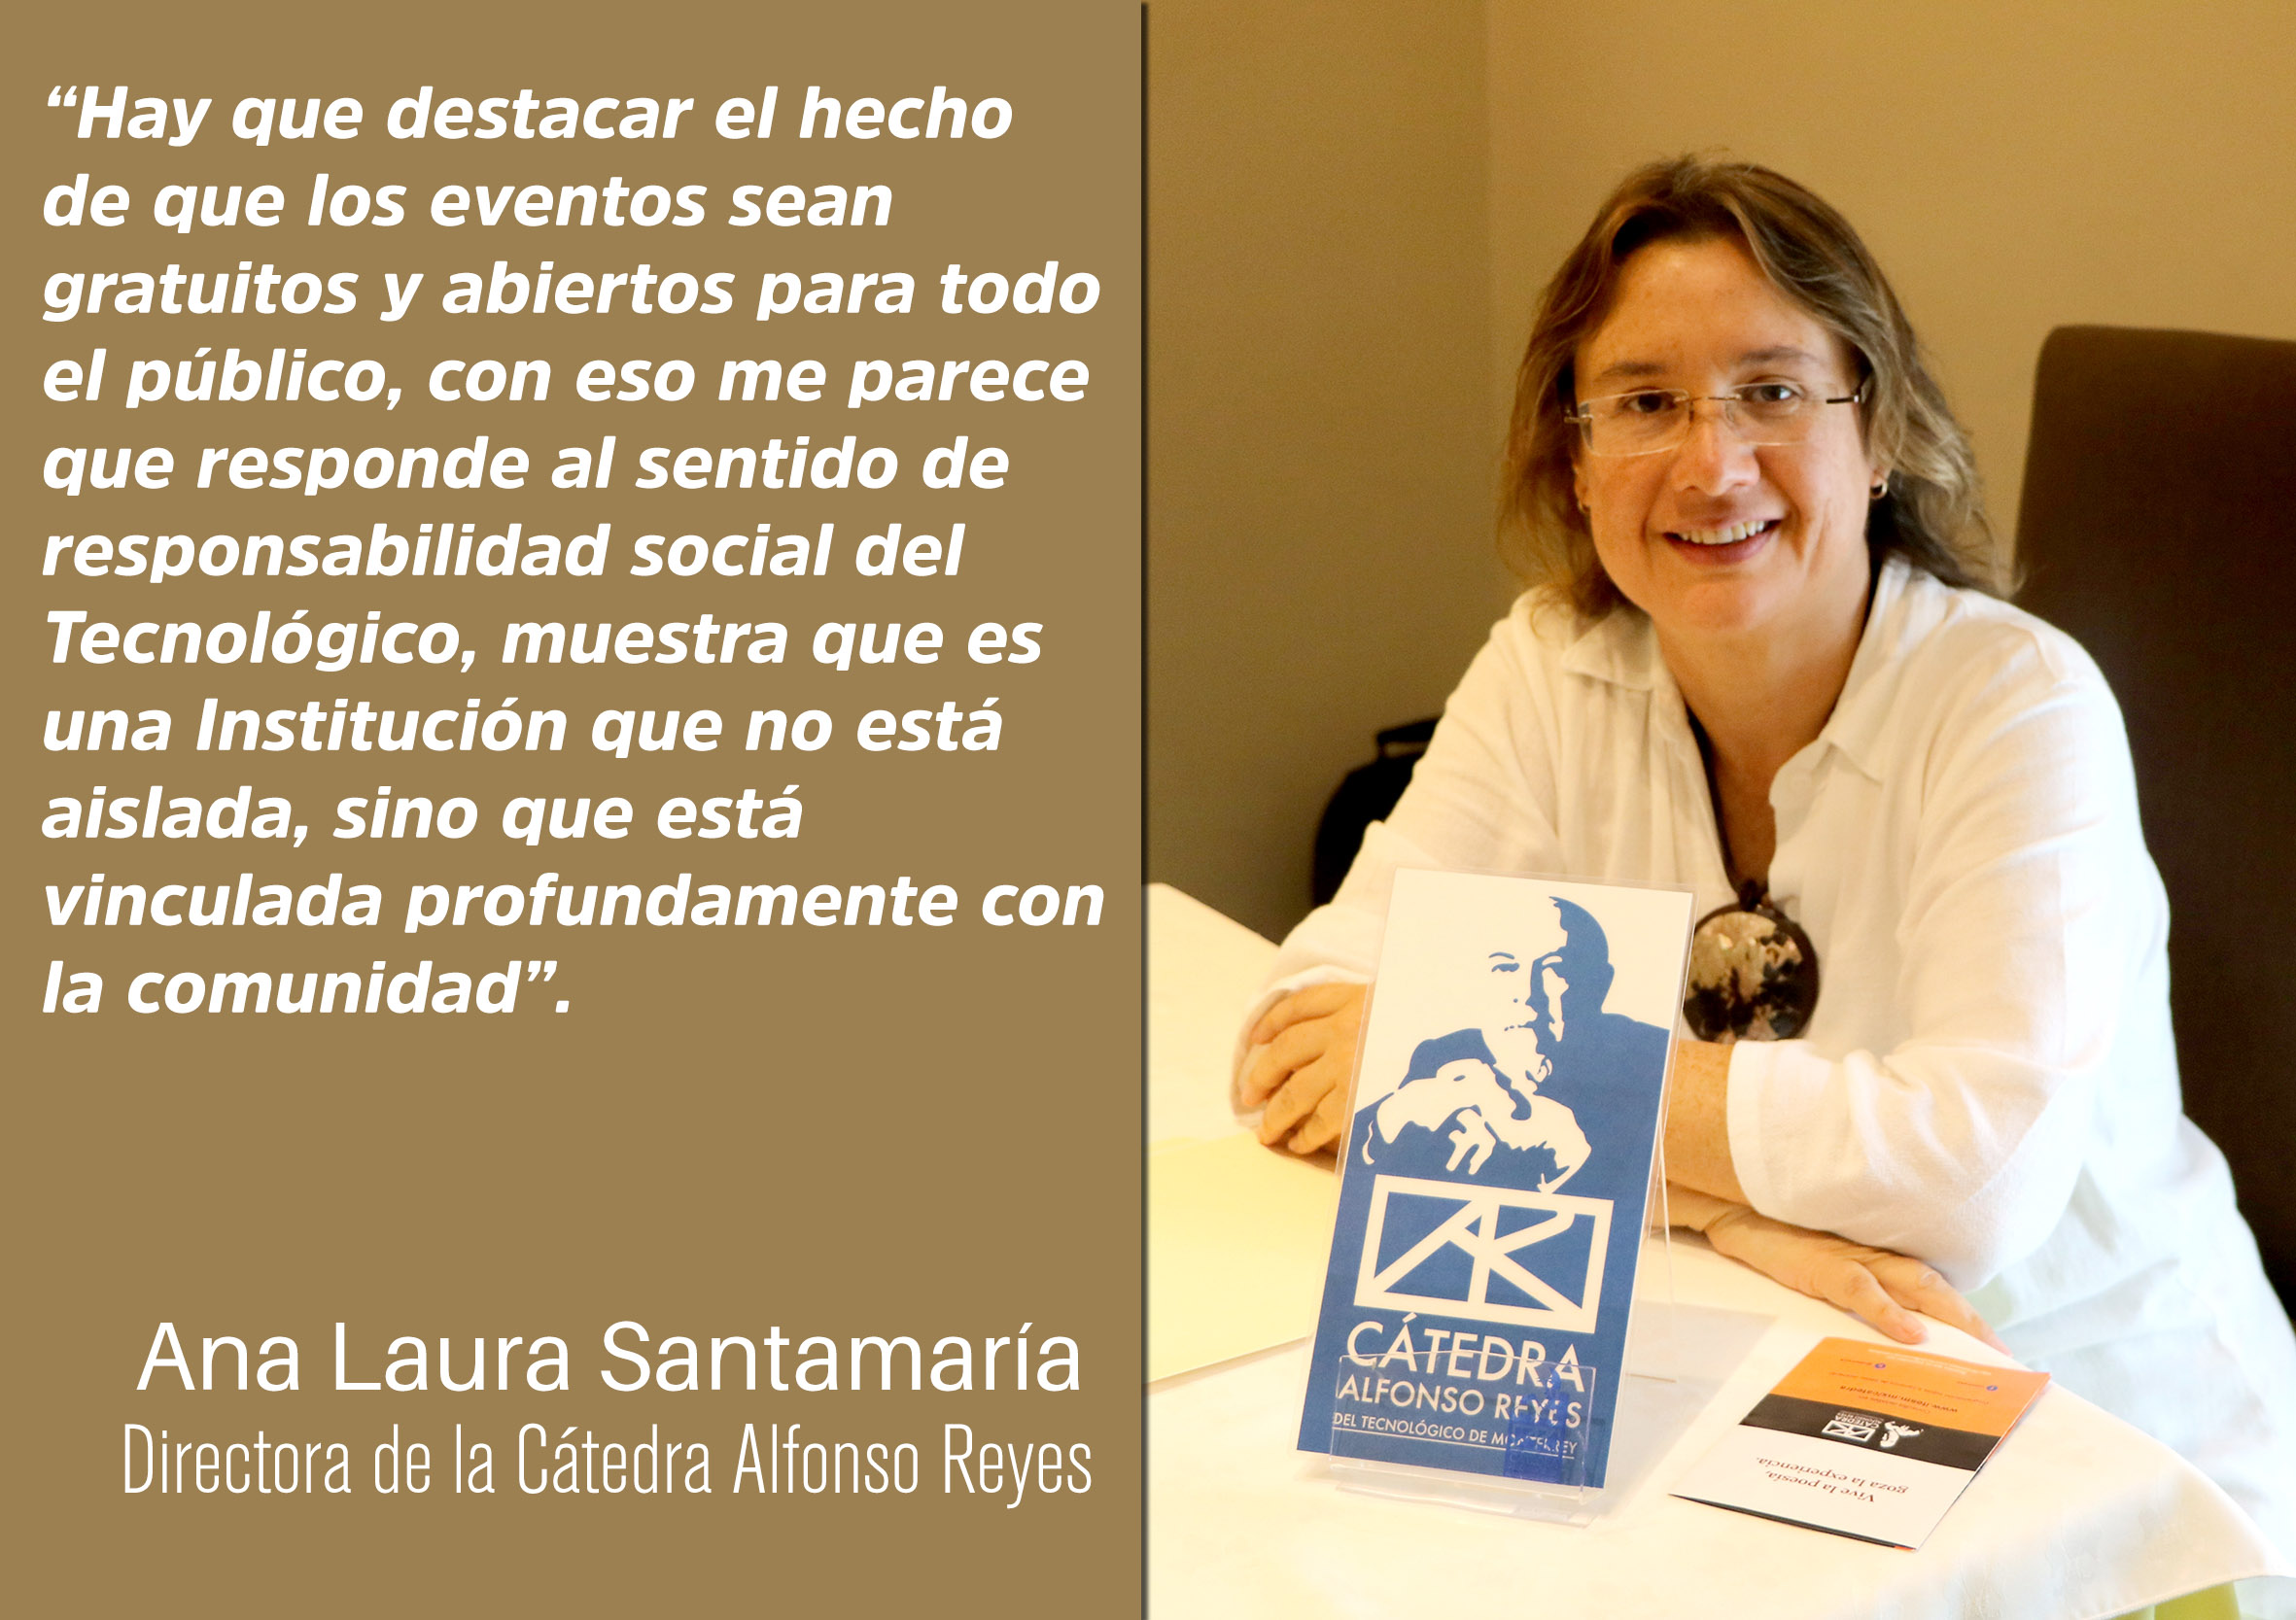 Ana Laura Santamaría